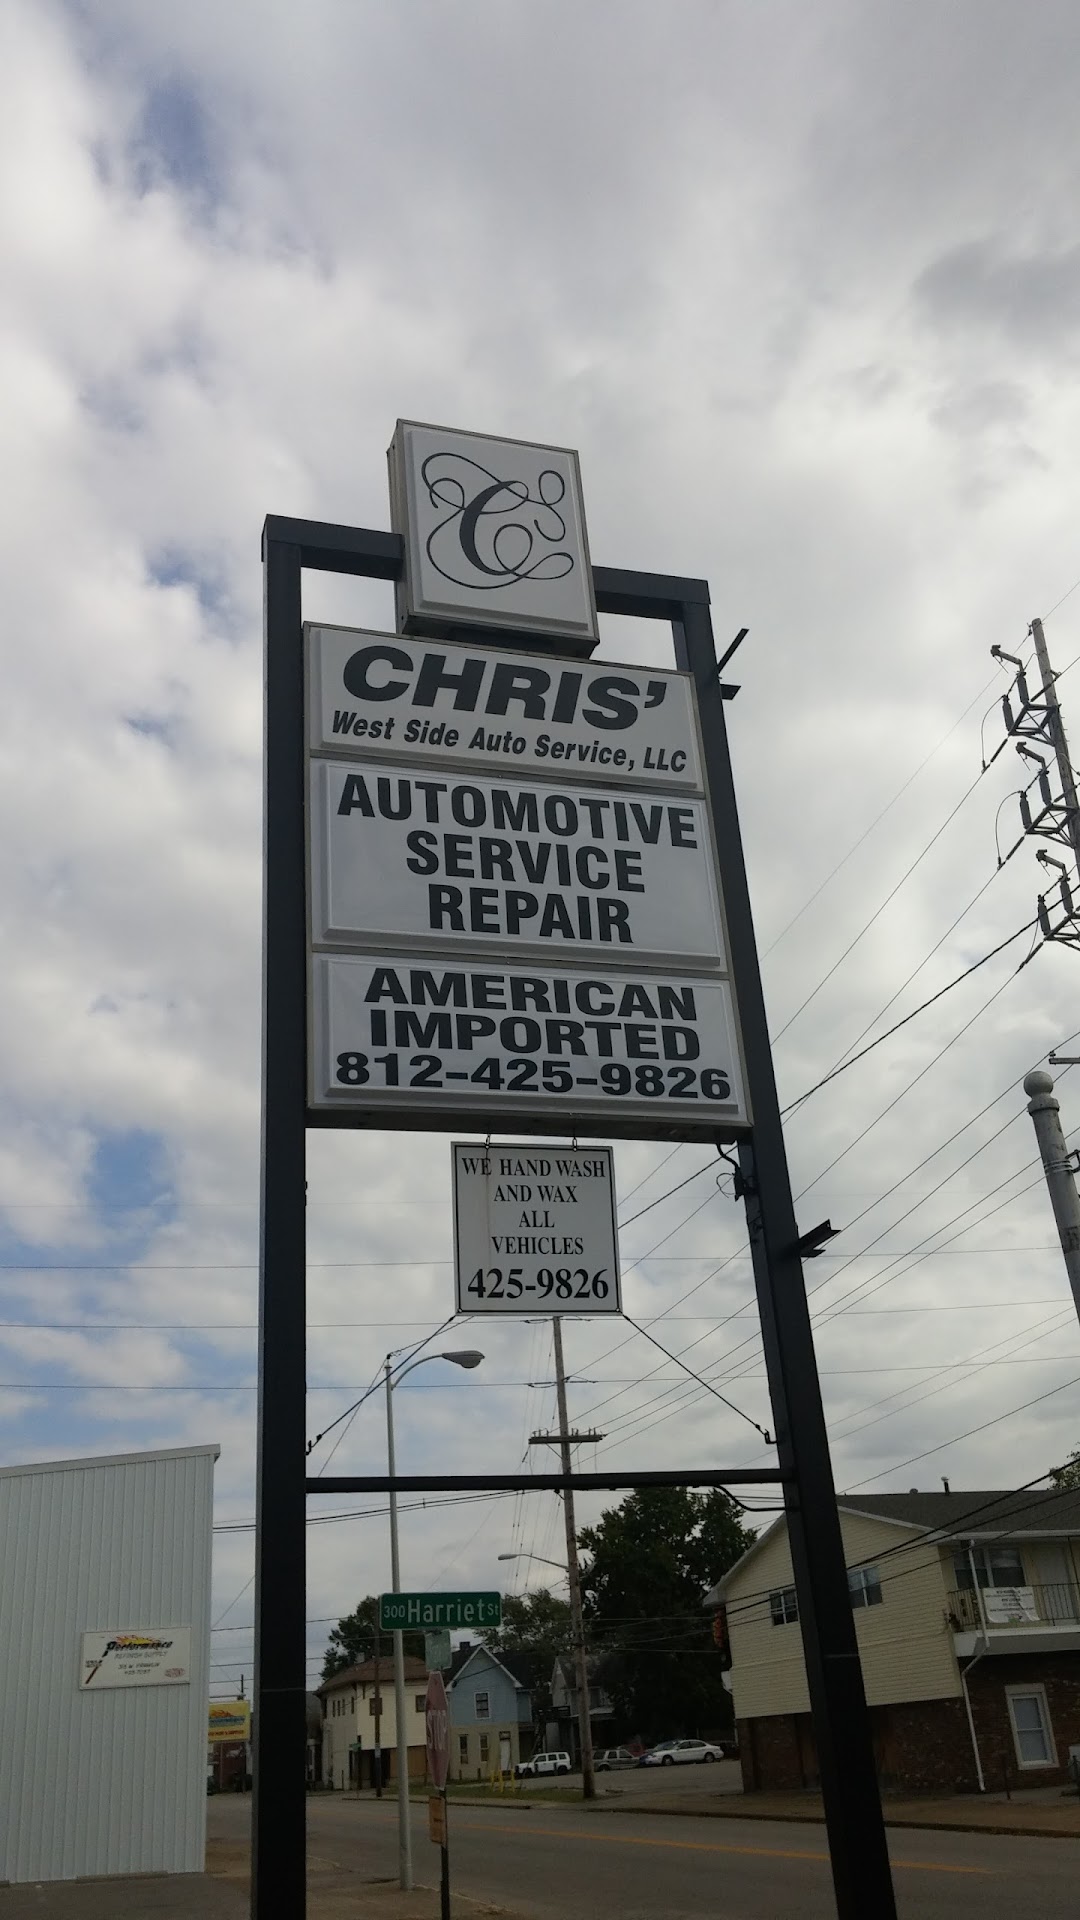 Chris West Side Auto Service LLC